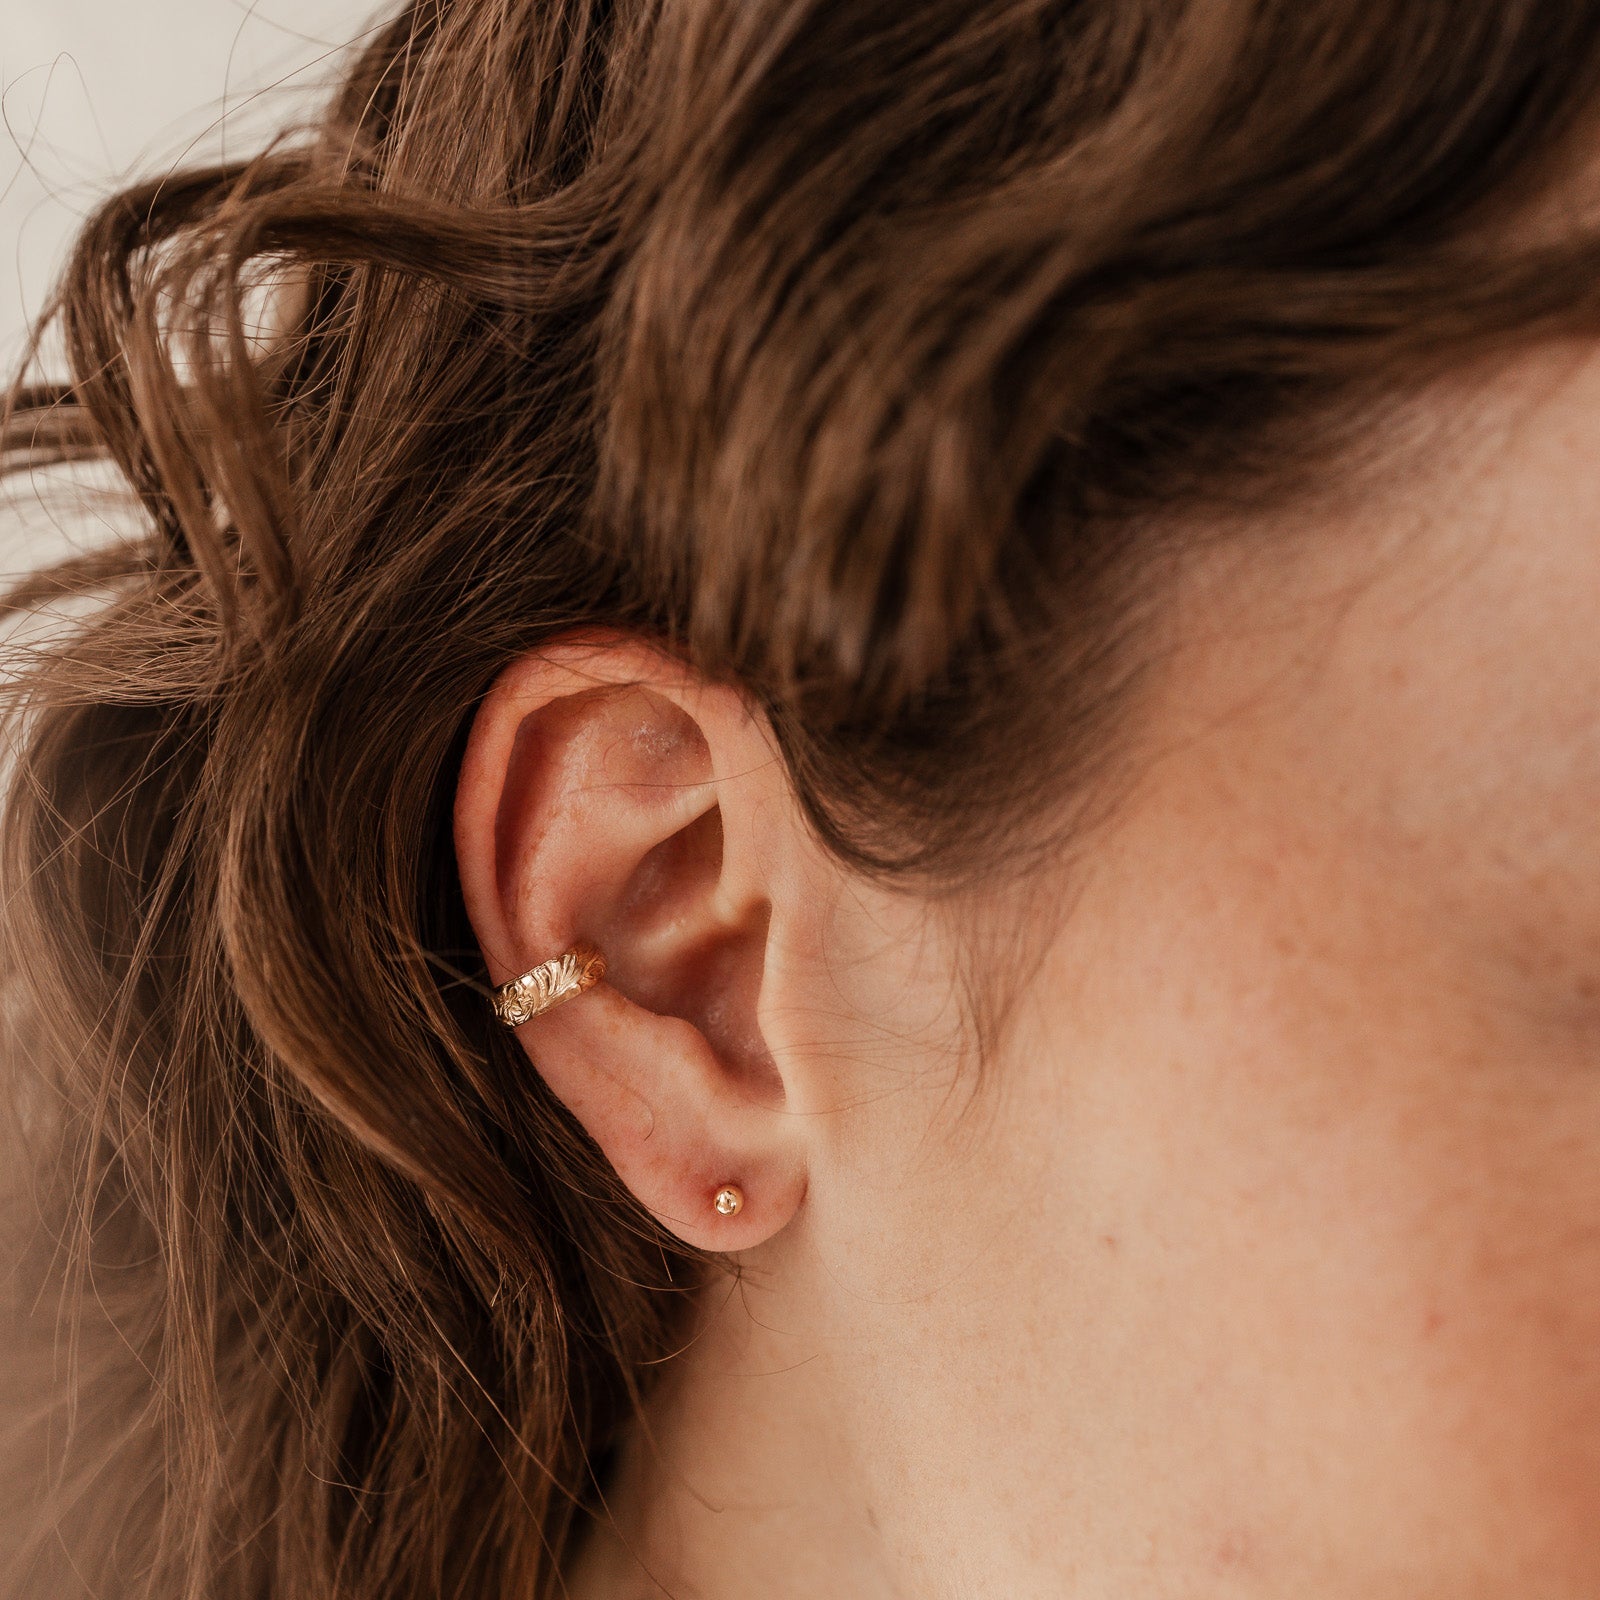  Patterned Ear Cuff